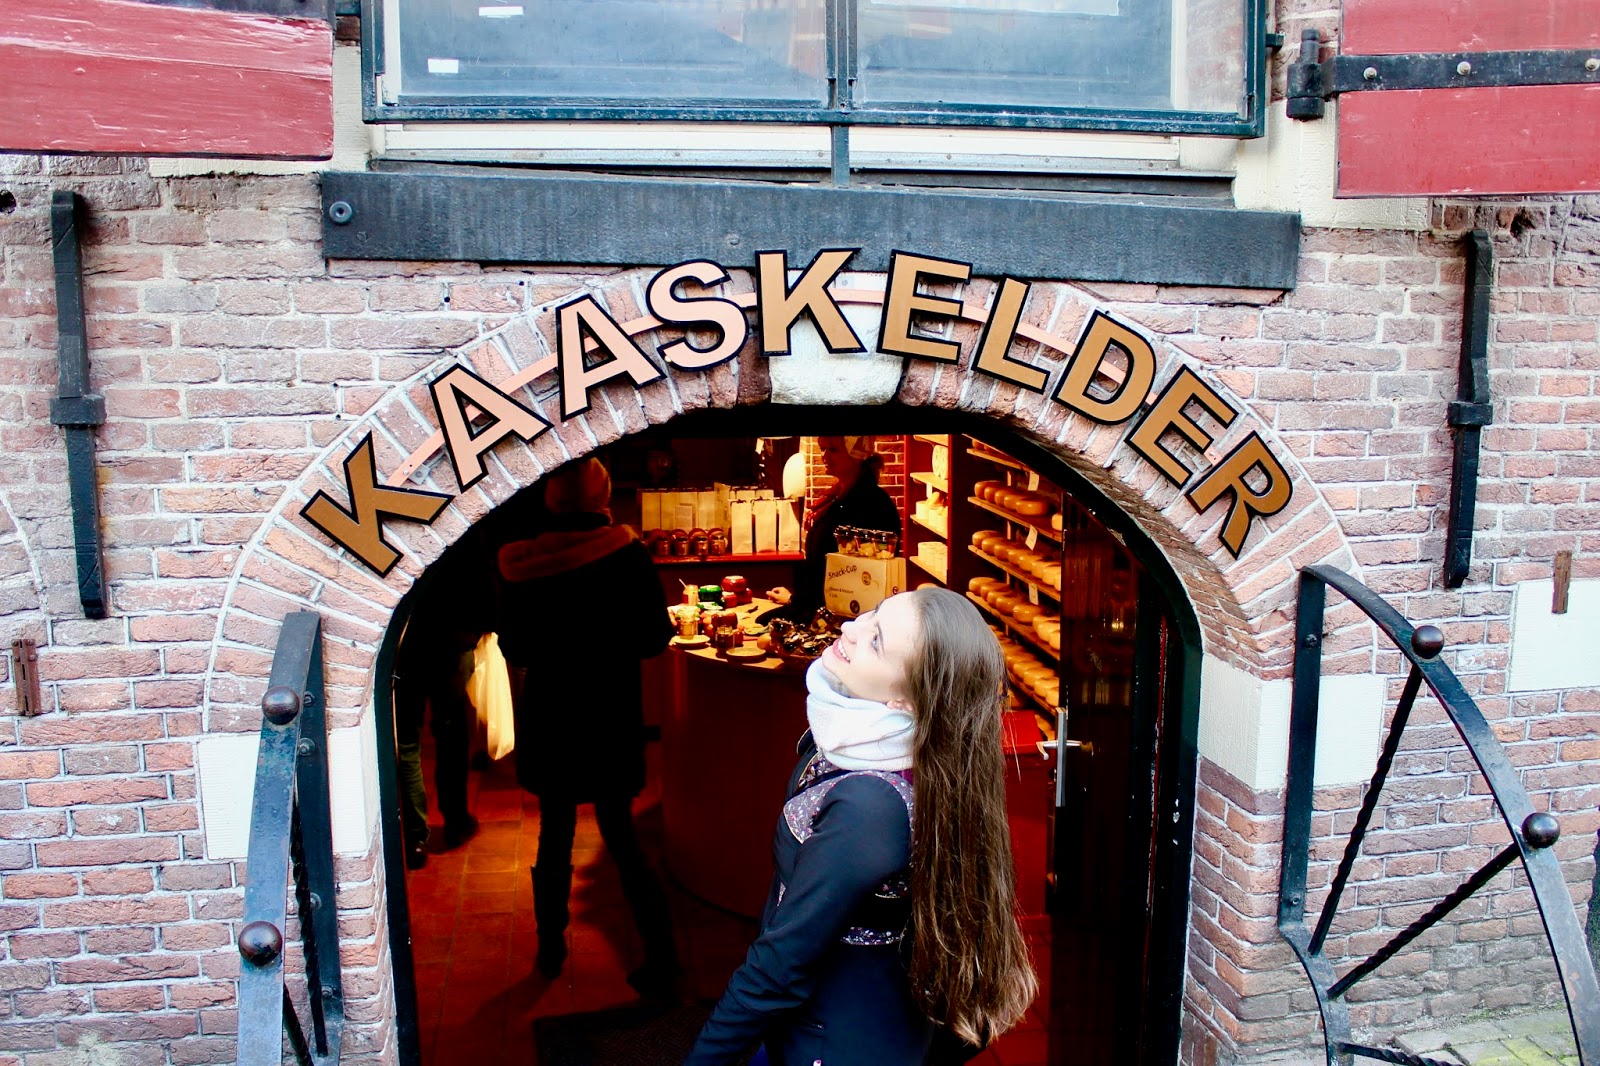 Kaaskelder Amsterdam Bloemenmarkt Dutch Cheese